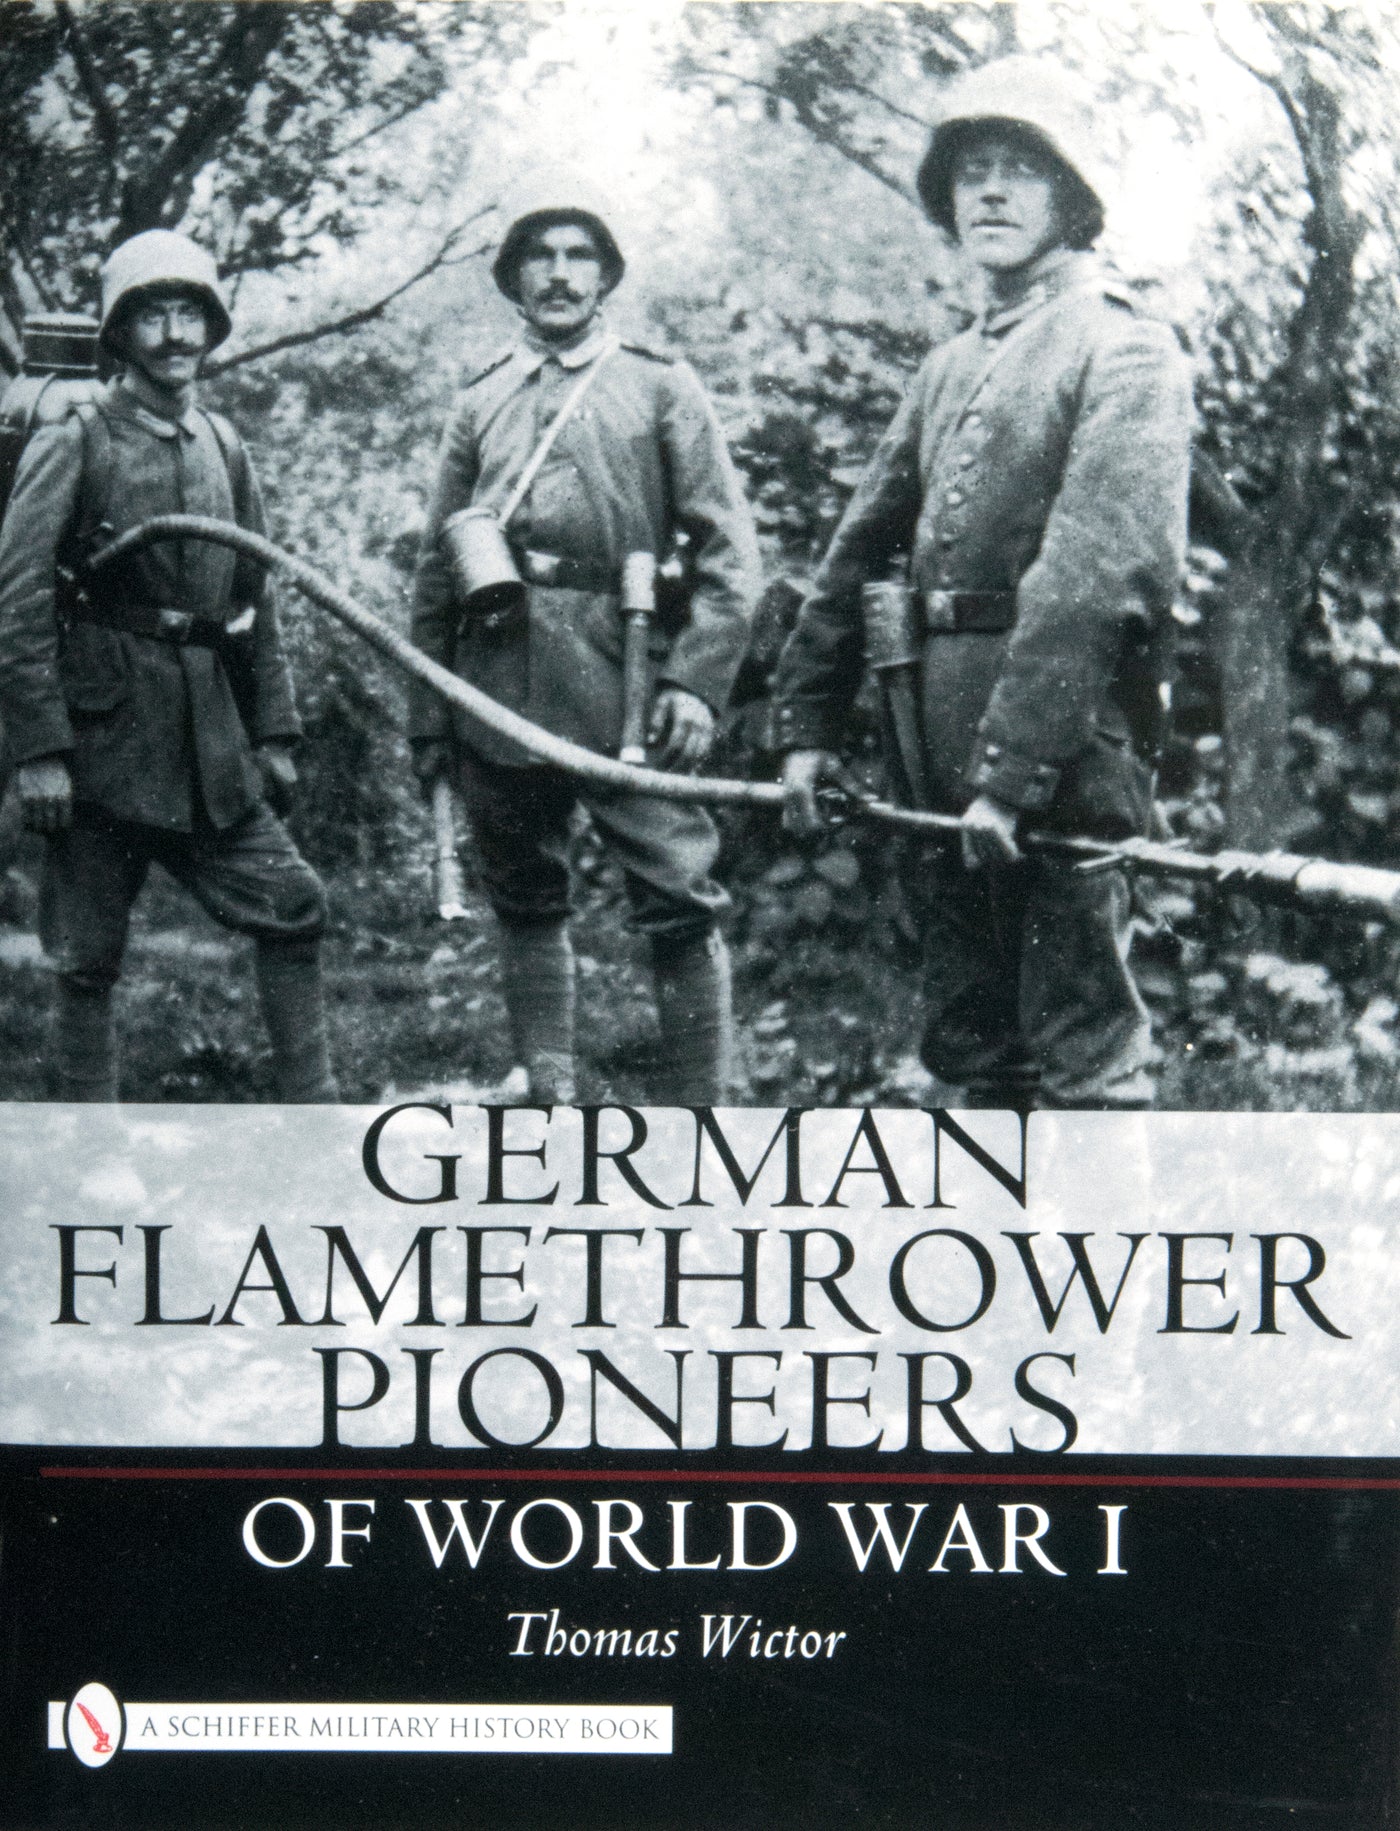 German Flamethrower Pioneers of World War I